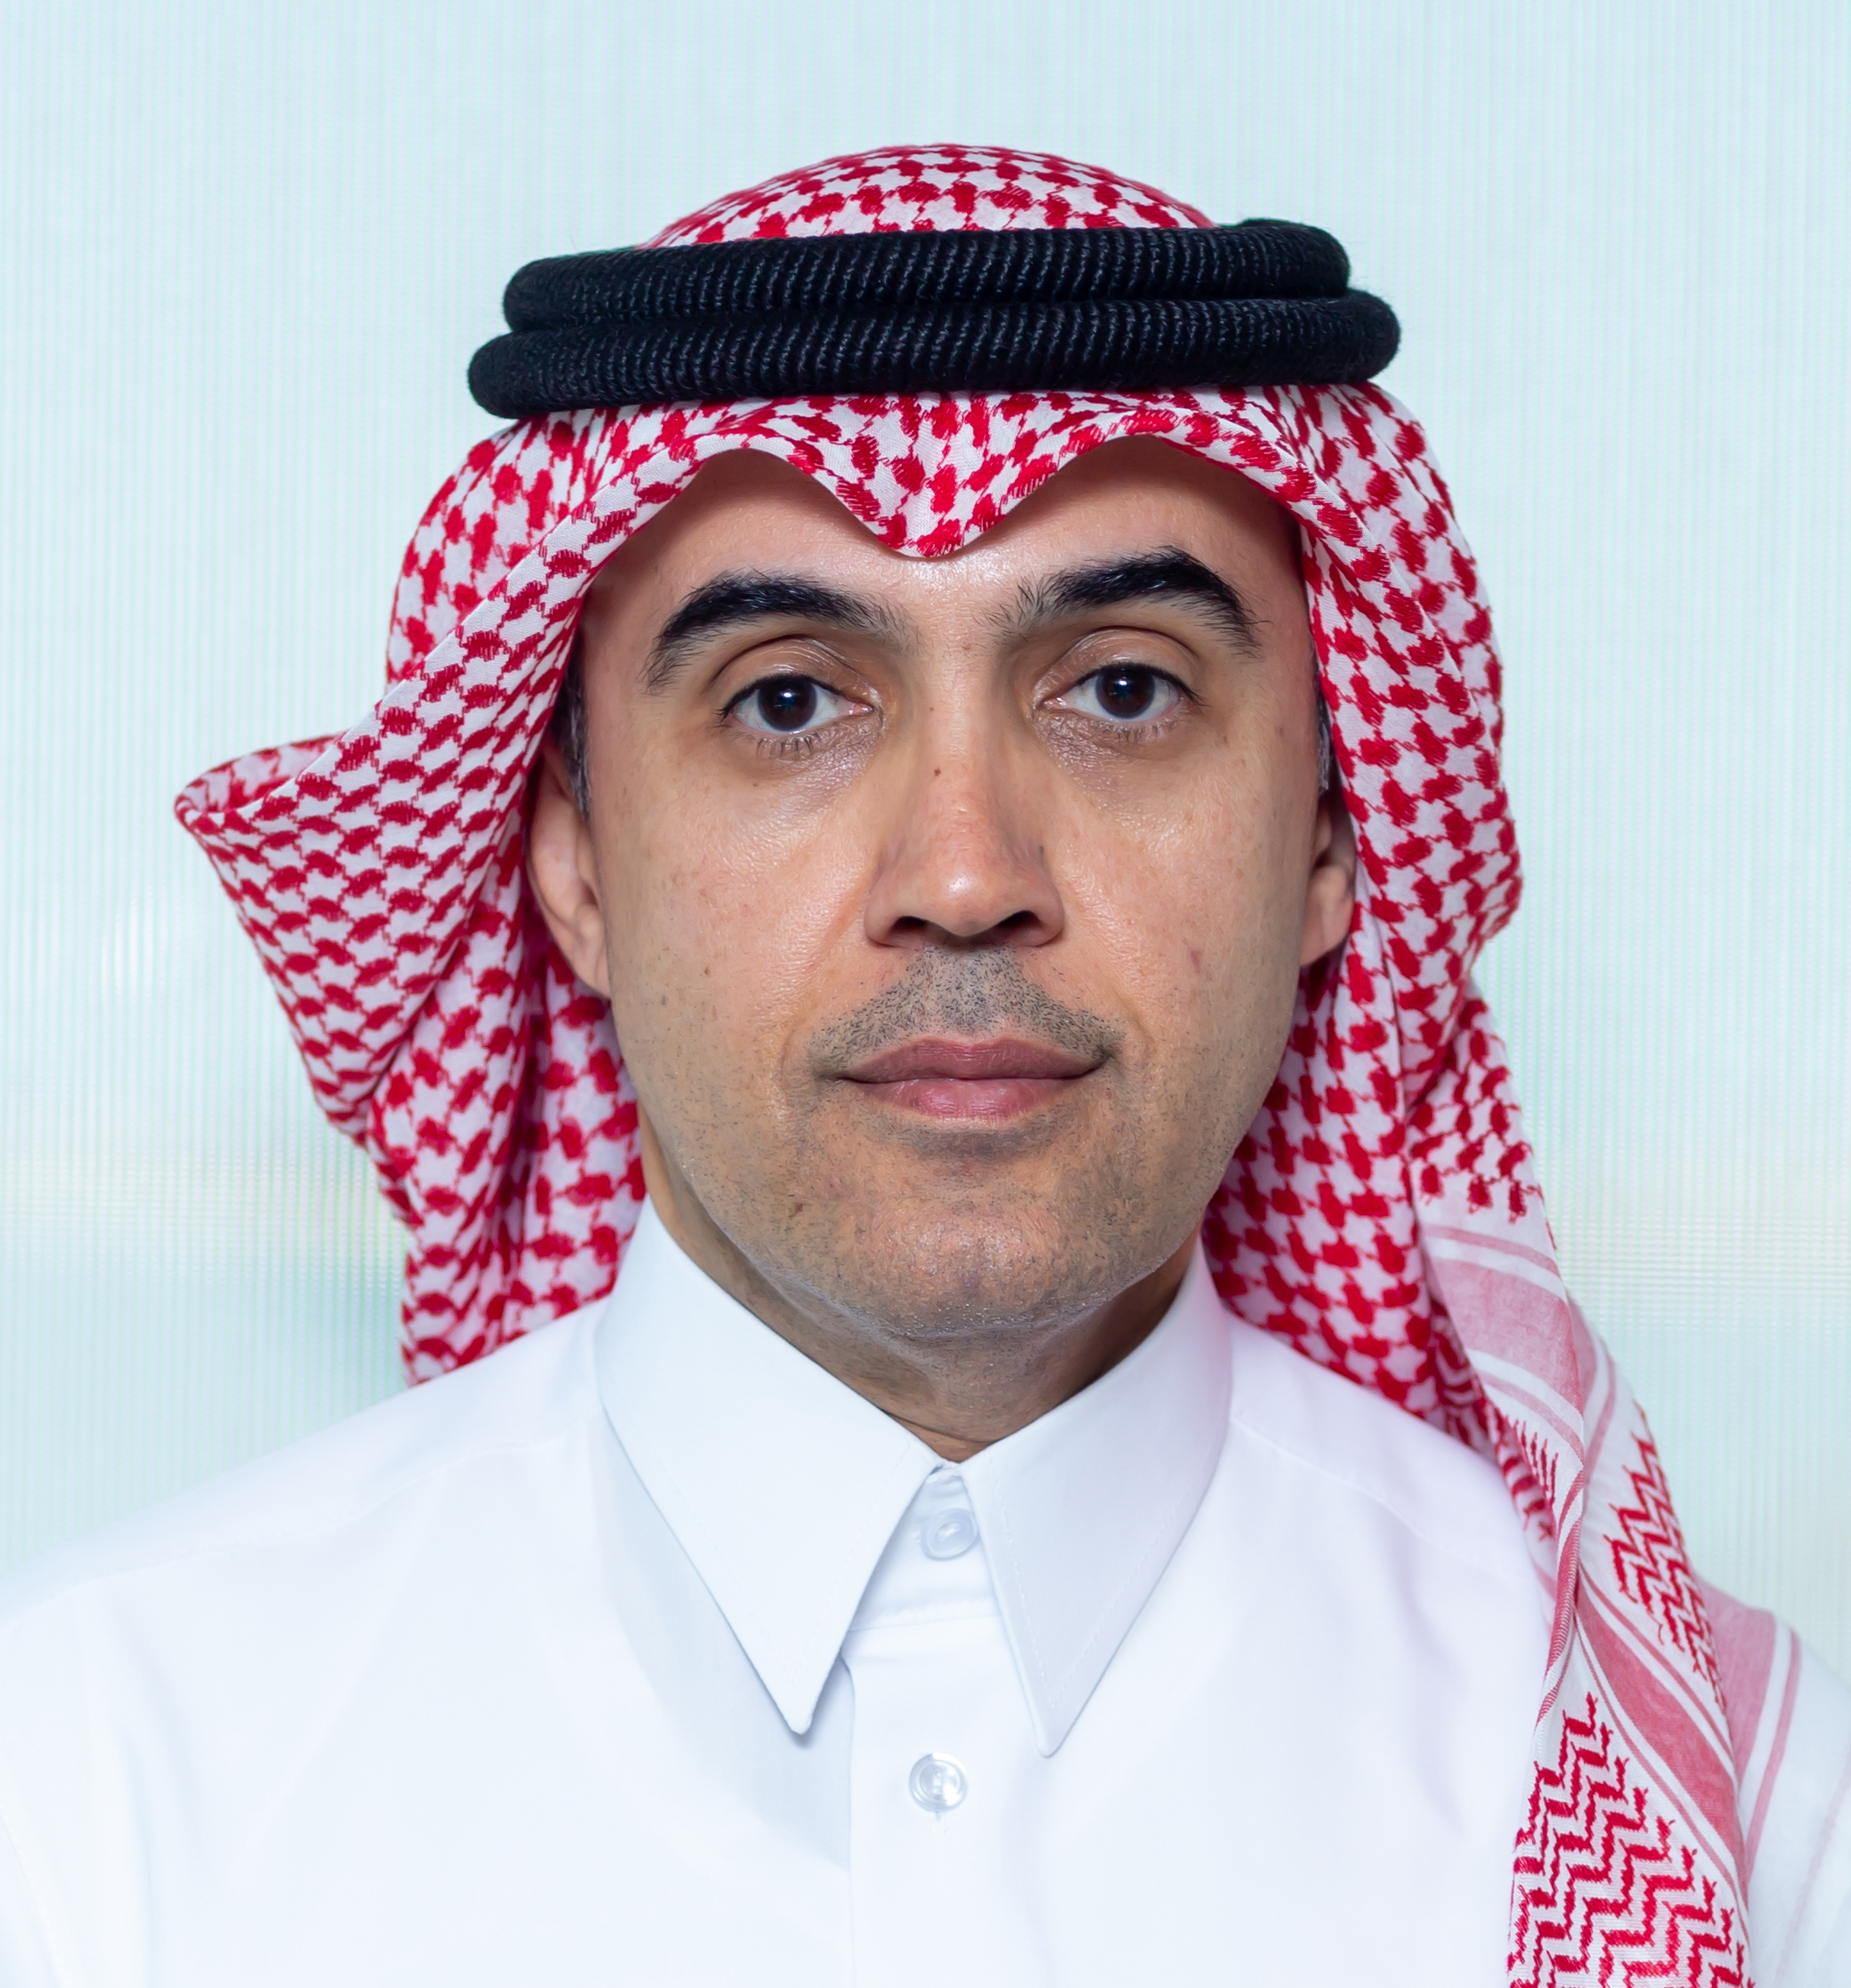 Mr. Mohammed Ibrahim Al-Emadi